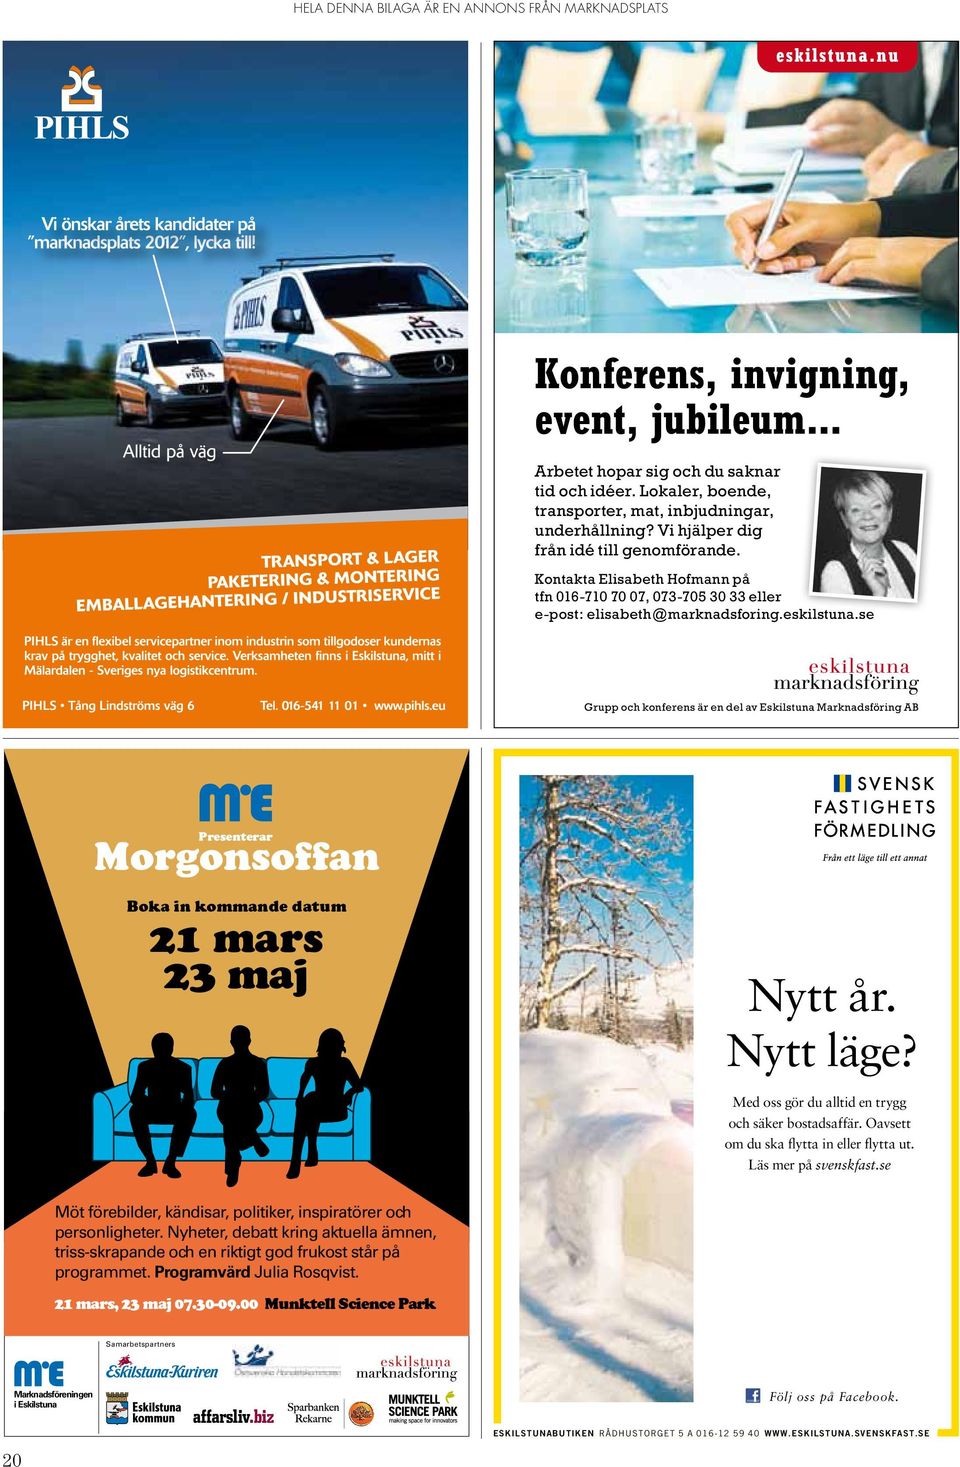 se Grupp och konferens är en del av Eskilstuna Marknadsföring AB Presenterar Morgonsoffan Boka in kommande datum 21 mars 23 maj Möt förebilder, kändisar, politiker, inspiratörer och personligheter.